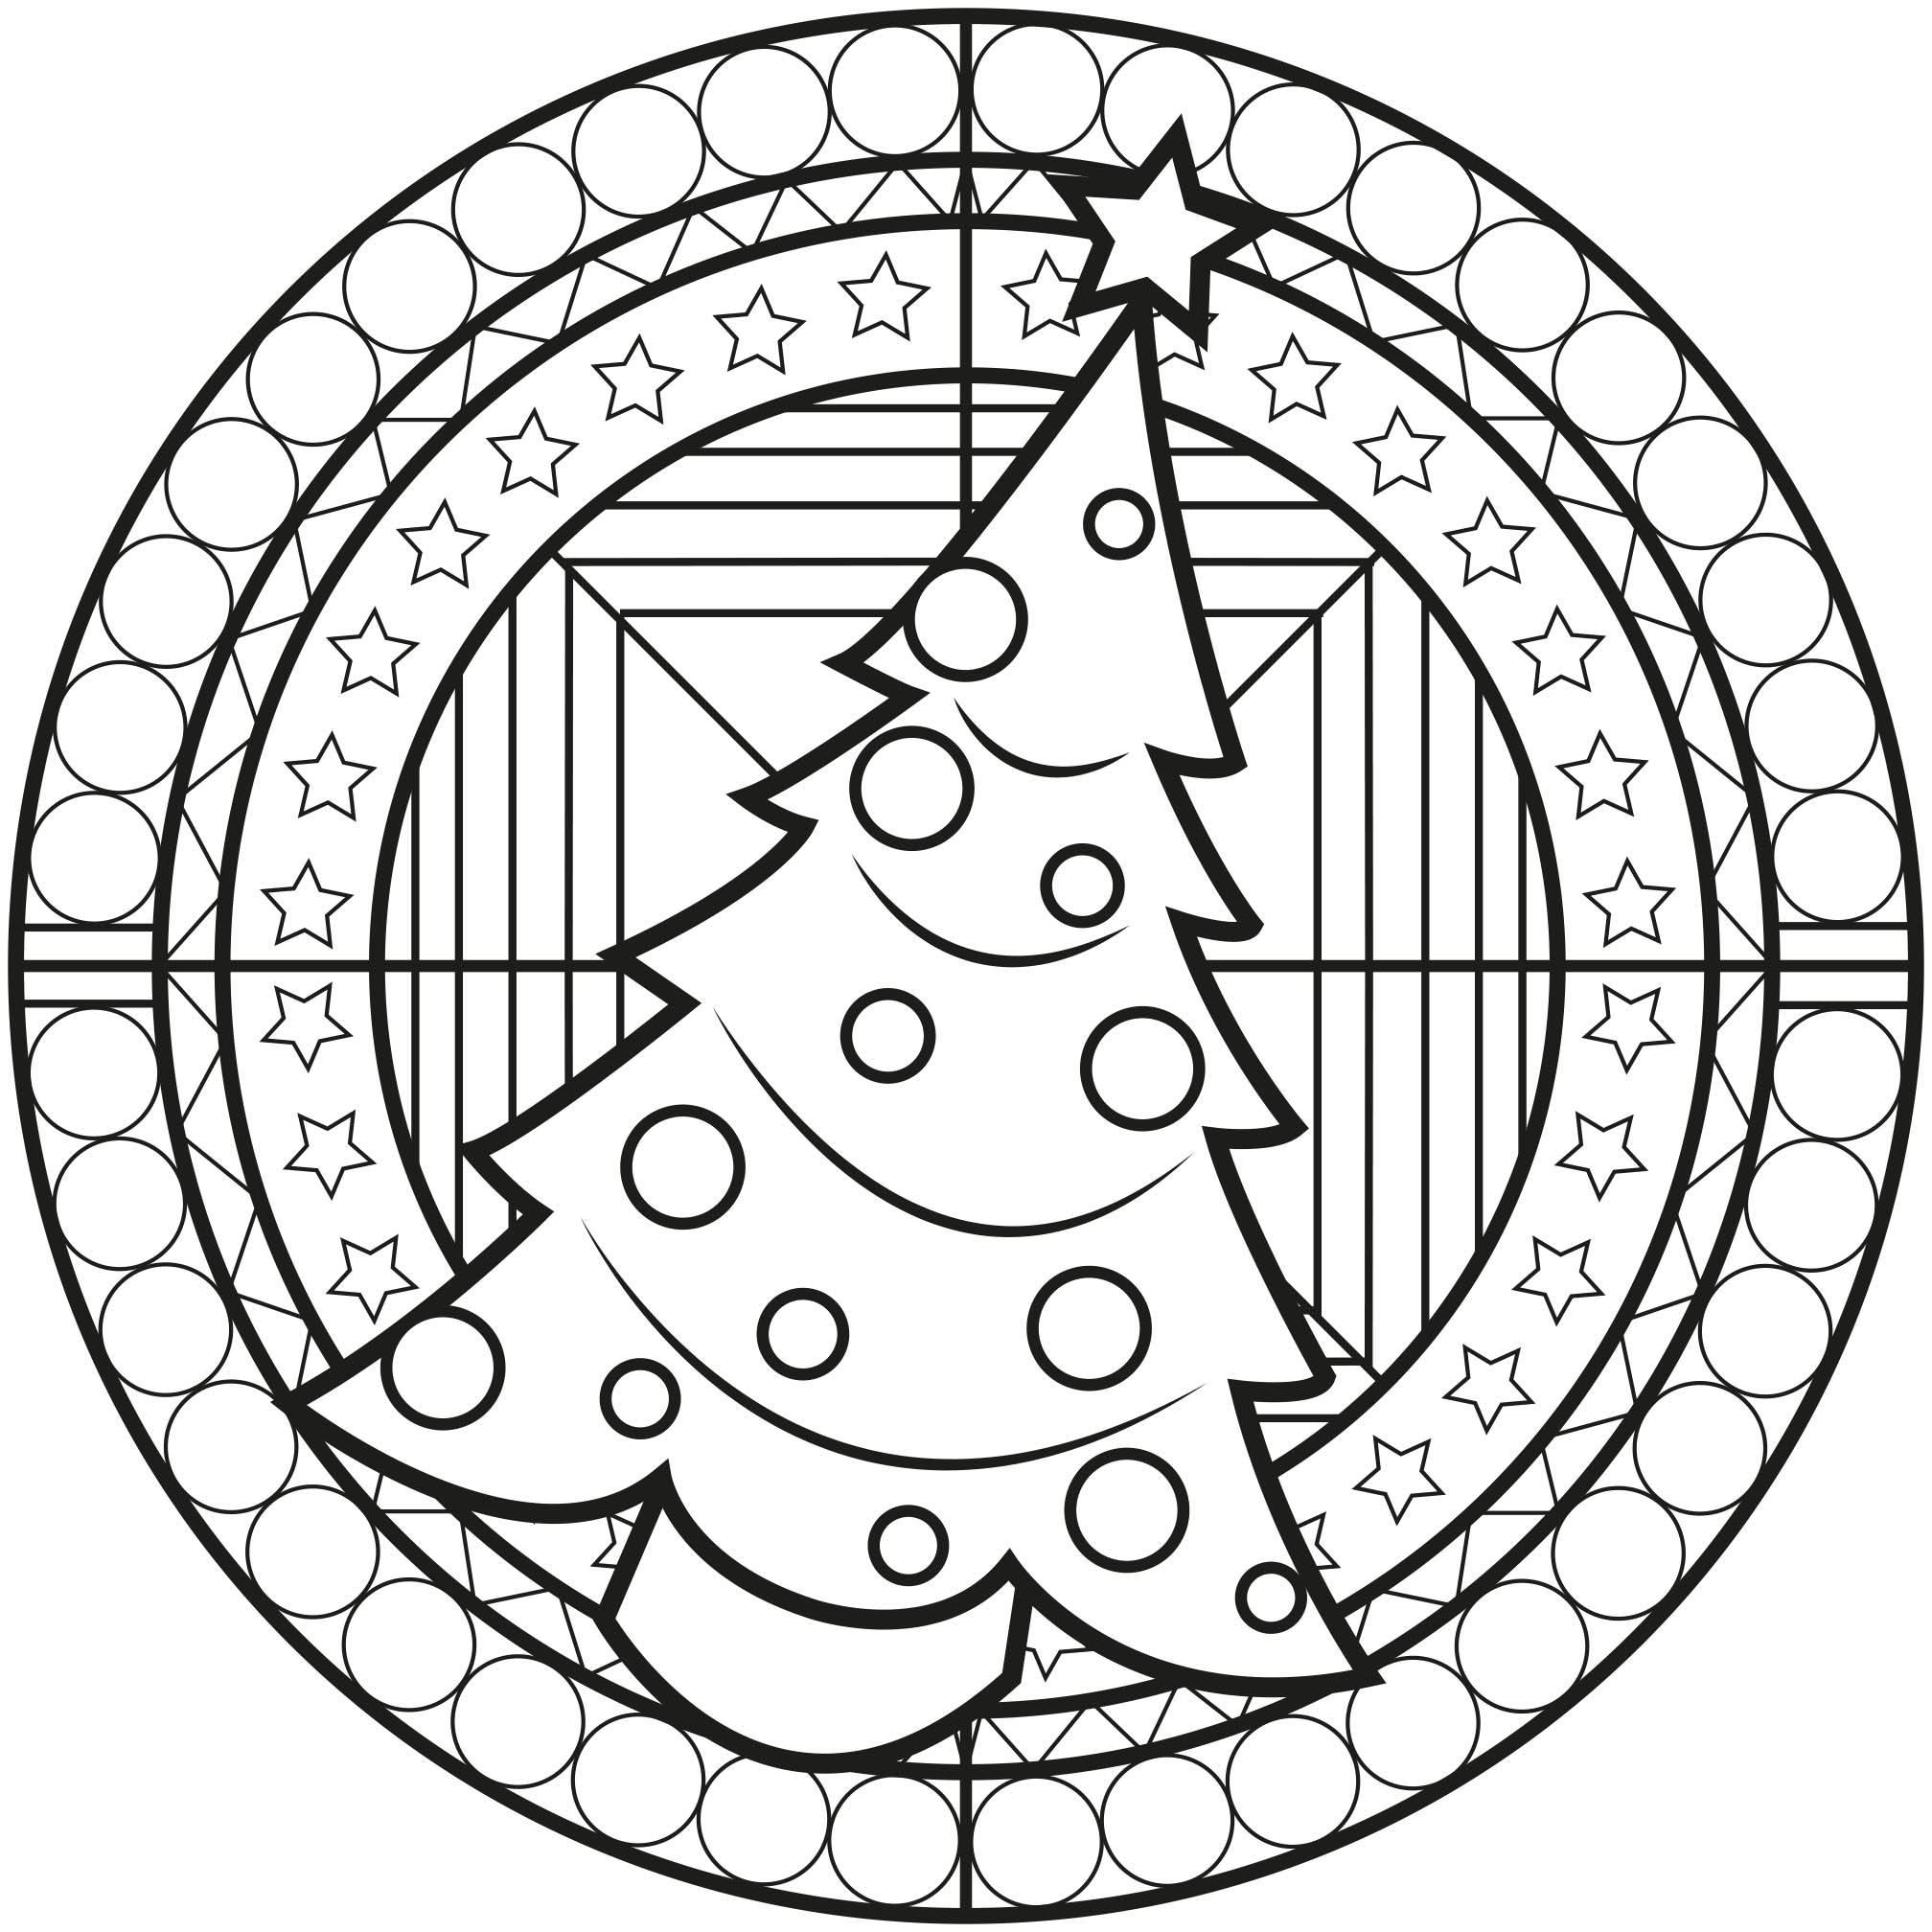 Un Mandala de difficulté 'normale', sur le thème de Noël, qui conviendra aux enfants et aux adultes qui souhaitent des coloriages ni trop simples ni trop difficiles.